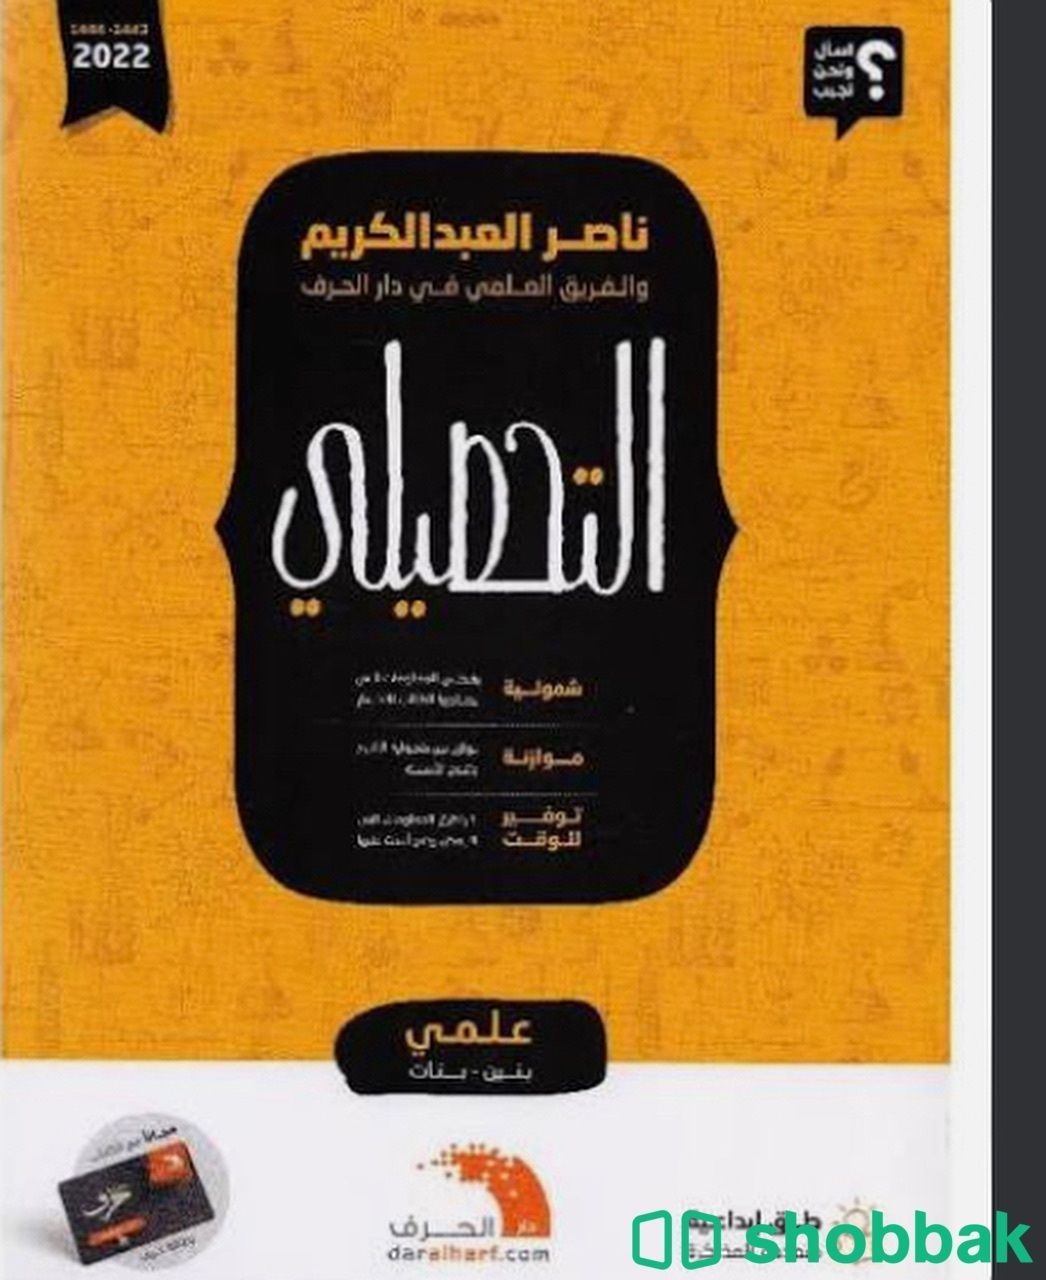 كتاب ناصر عبد الكريم نسخه 2022 Shobbak Saudi Arabia